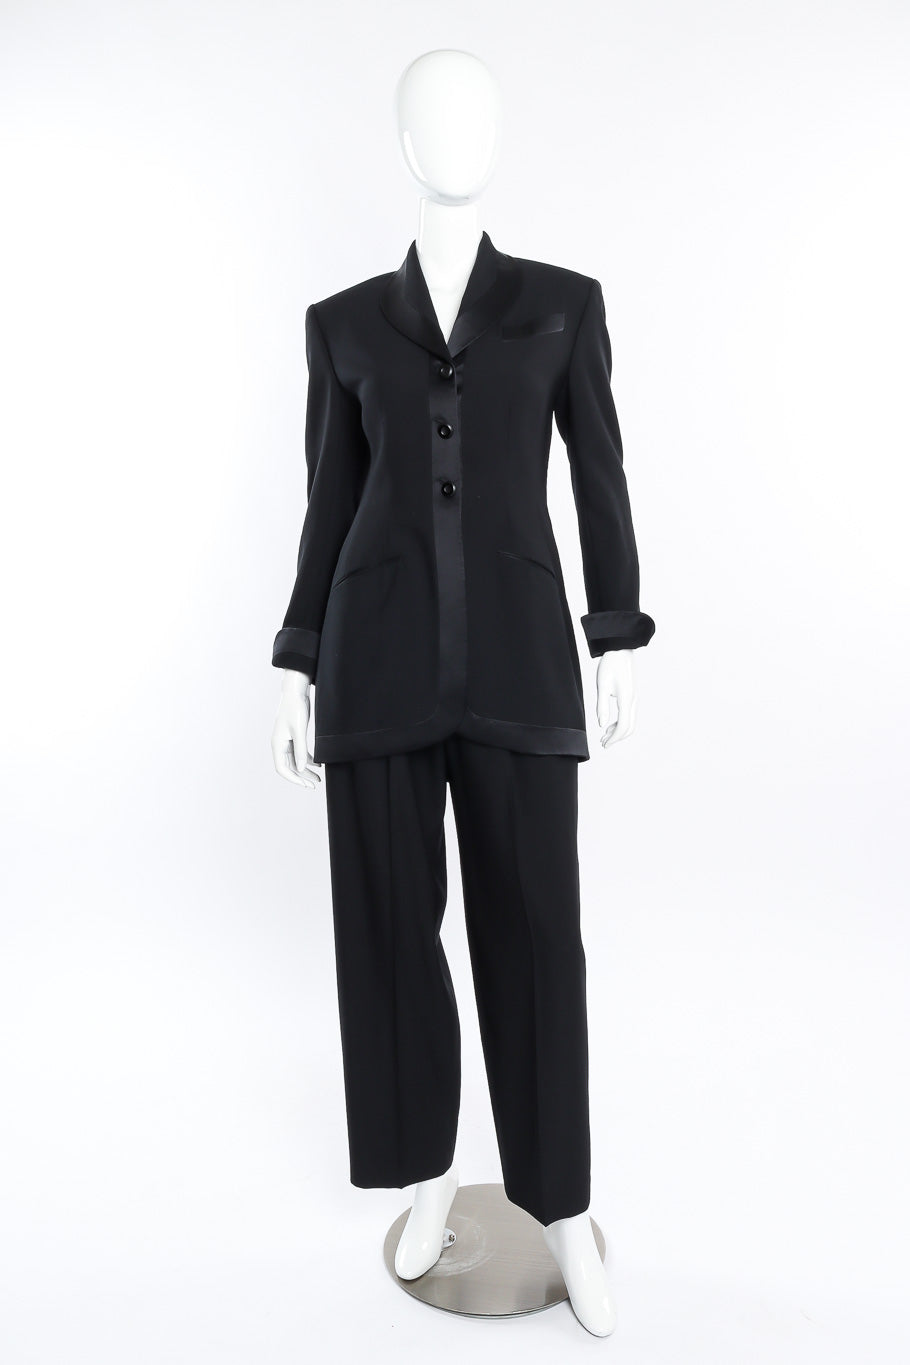 Vintage Richard Tyler Tuxedo Pant Suit front view on mannequin @Recessla